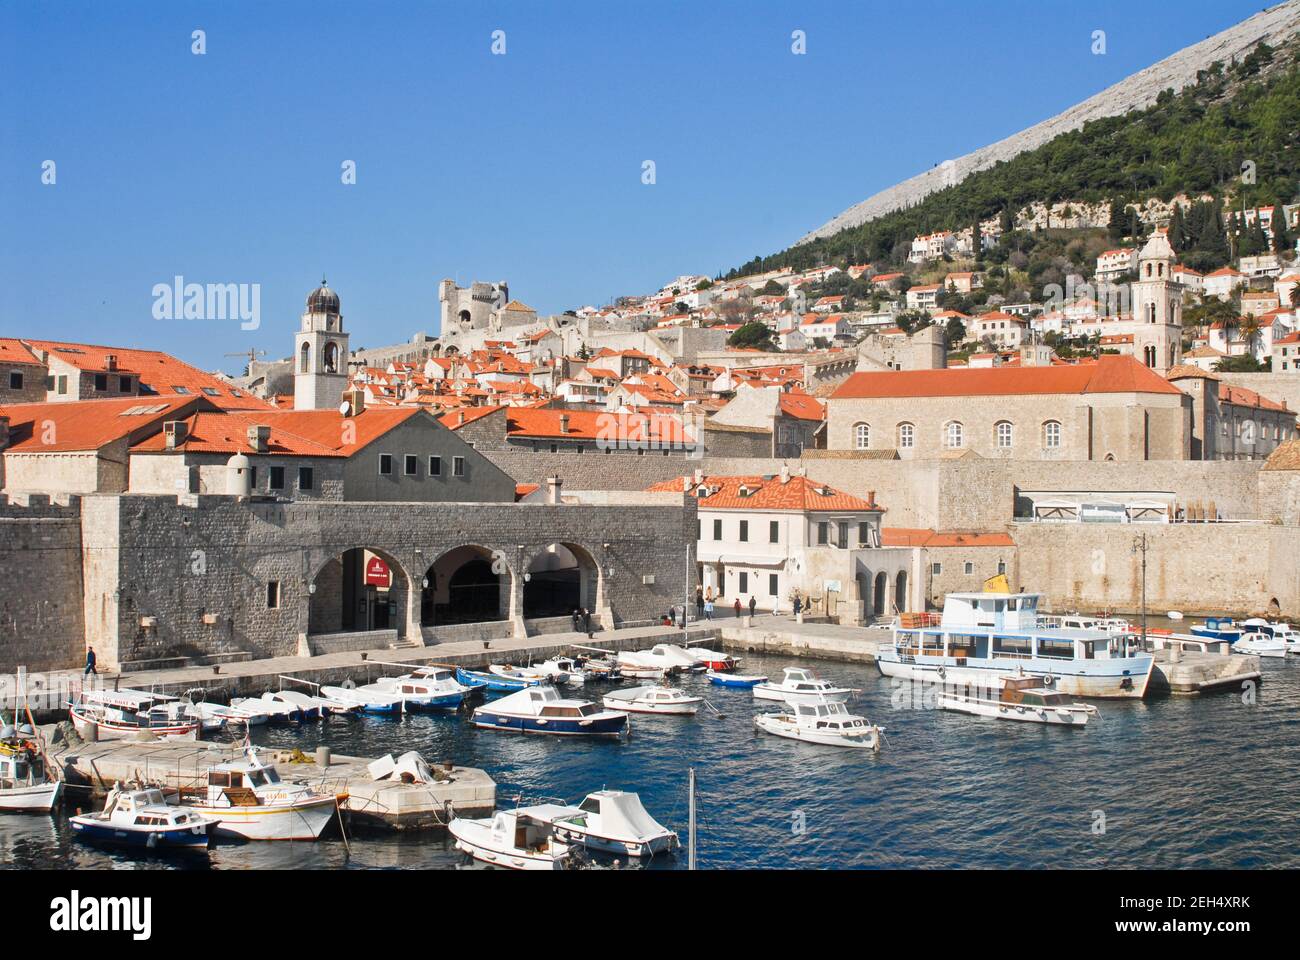 Vieux port de Dubrovnik, avec fond de montagnes. Croatie Banque D'Images